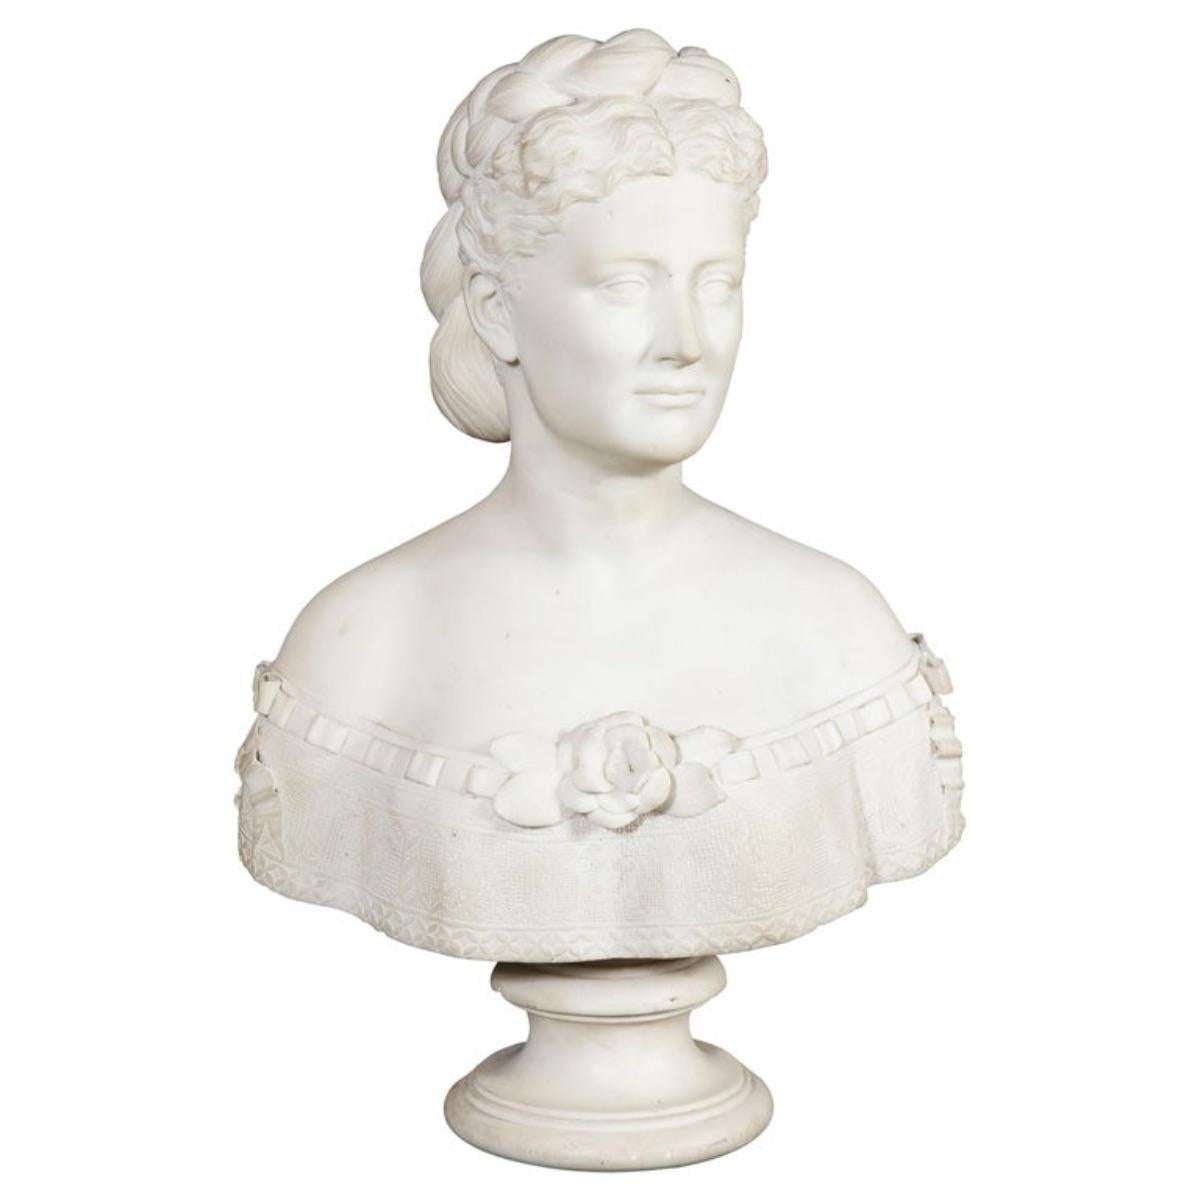 Thomas Ridgeway Gould (1818–1881): äußerst rare amerikanische Büste einer Frau aus weißem Marmor, um 1870.  

Darstellung einer schönen Frau mit doppelreihigem, zu einem Dutt geflochtenem Haar. Sehr gute Qualität, ein Meisterwerk, Museumsskulptur. 